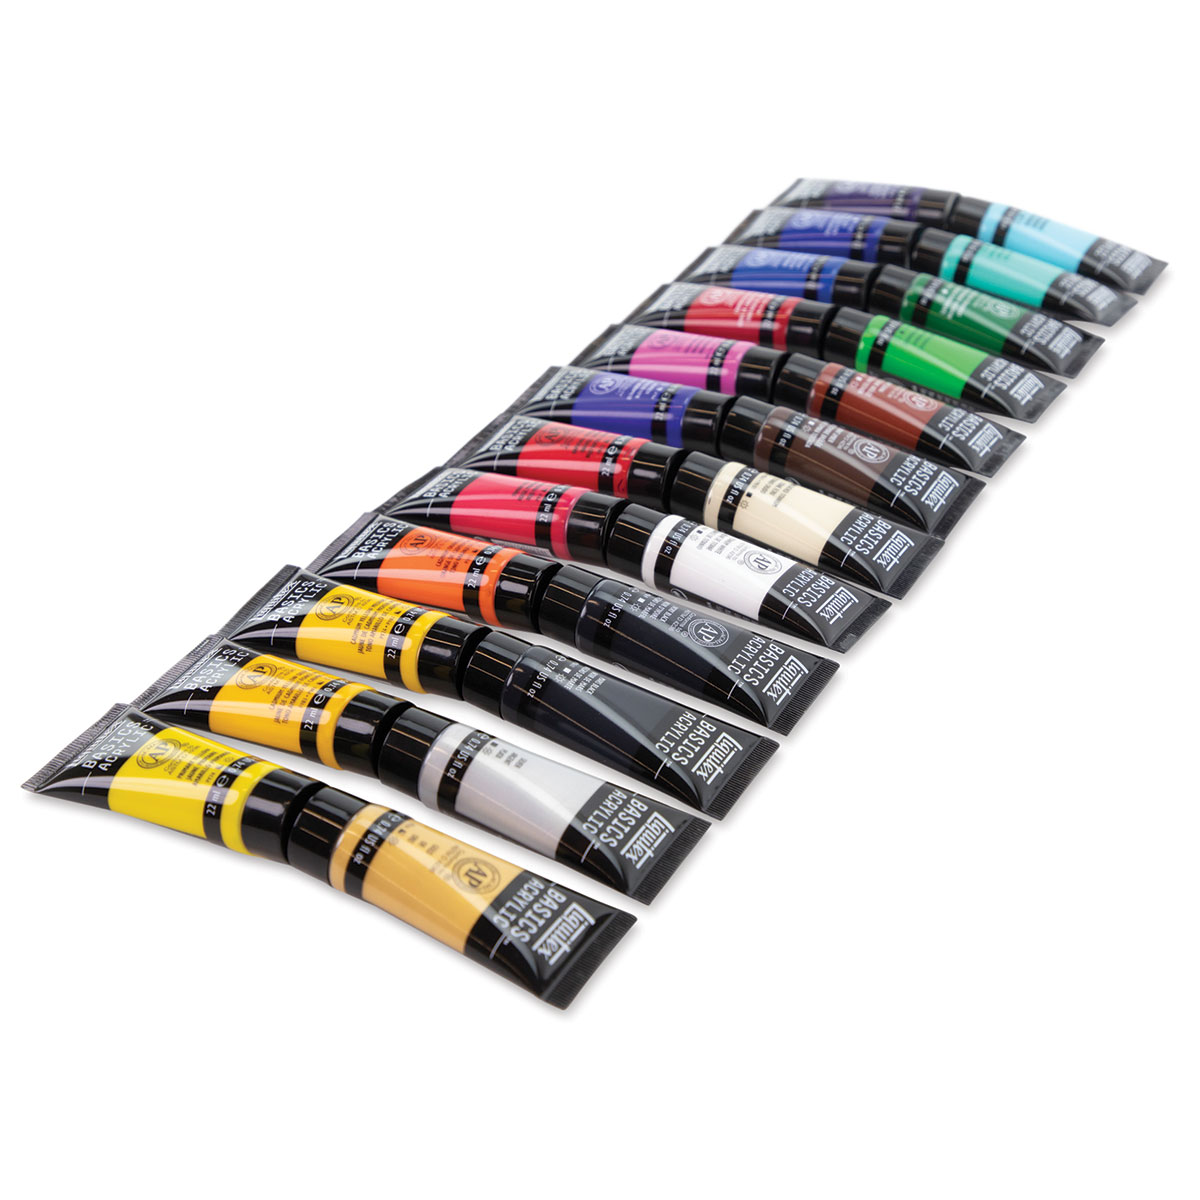 Liquitex Basics Set of 24 Acrylic Colors